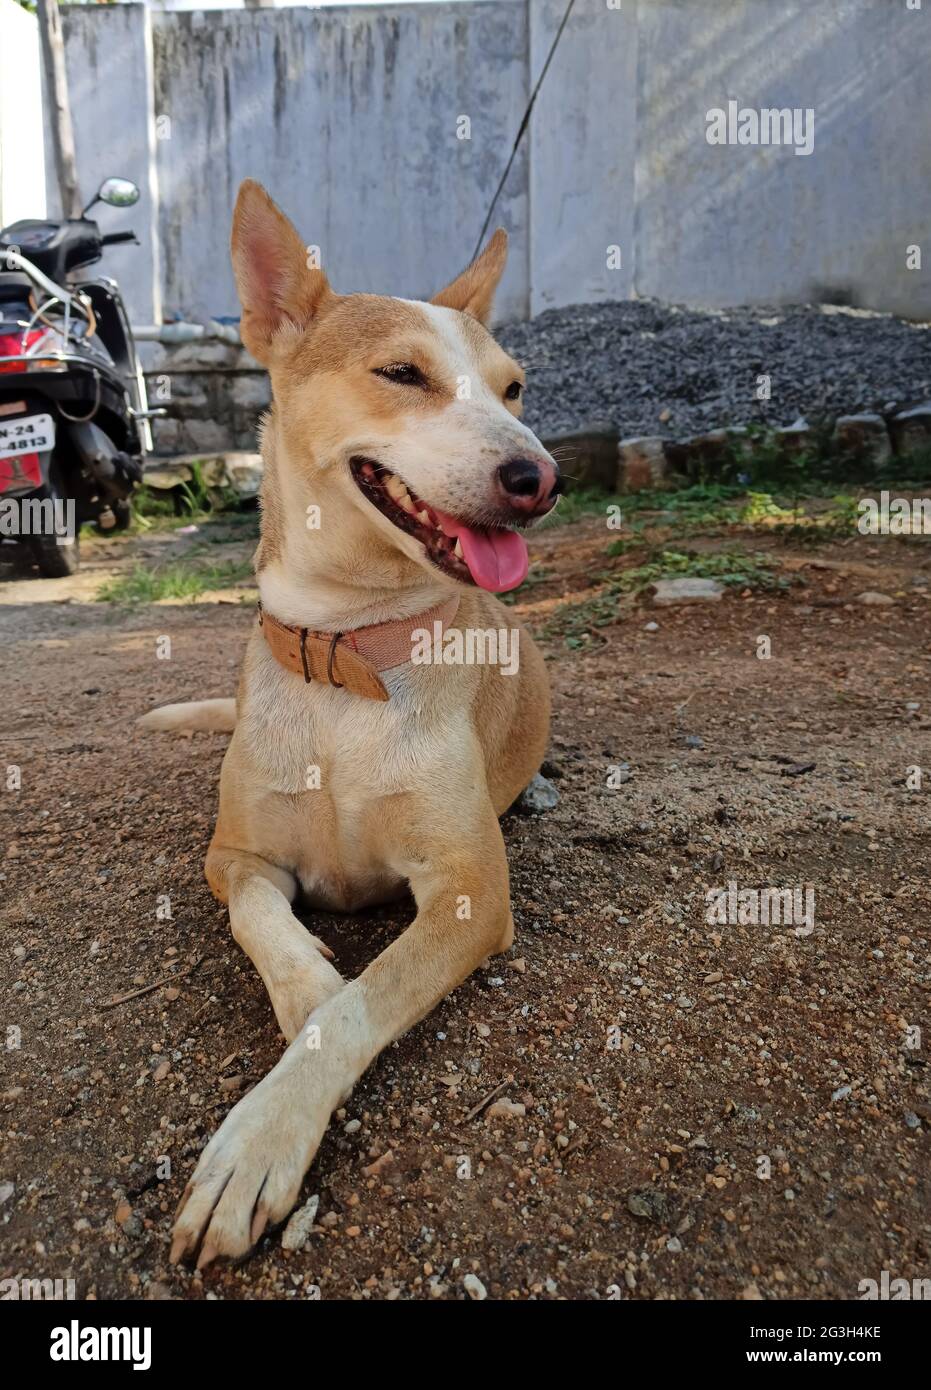 KRISHNAGIRI, INDIA - May 23, 2021: Dog sitting quit, brown and white mixed dog Stock Photo